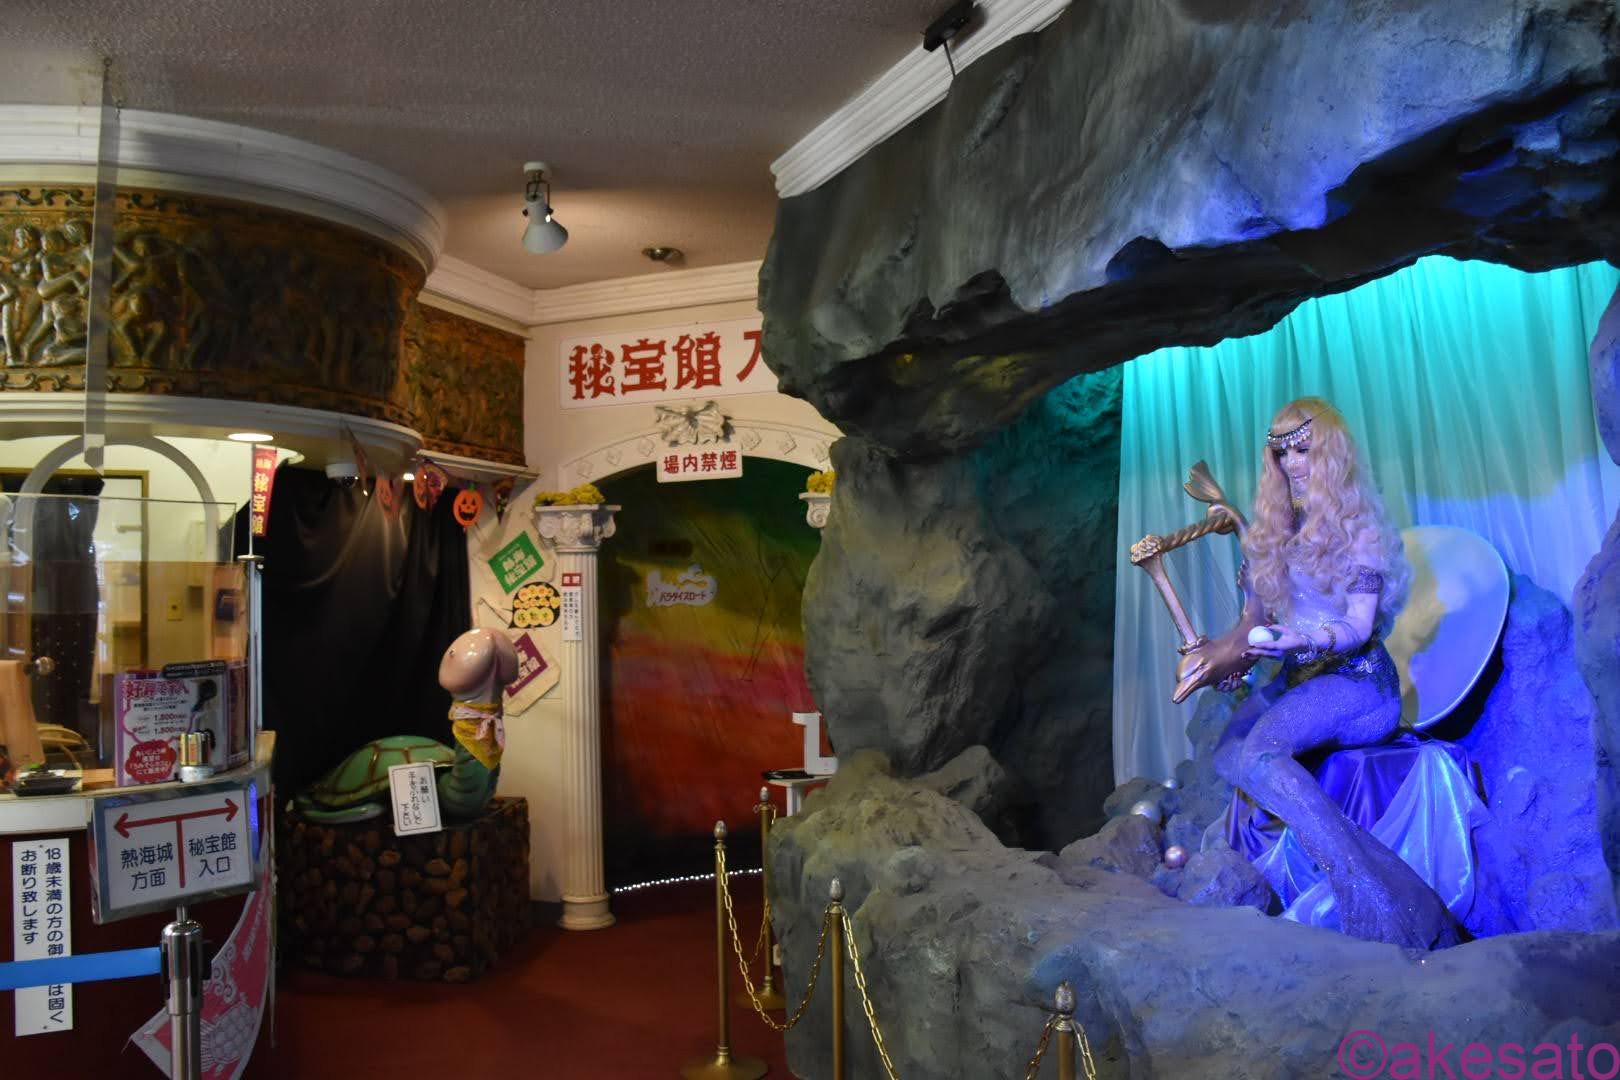 熱海 秘宝館 へ初潜入 国内で唯一のレトロな大人のテーマパーク 秘宝館 Deepランド